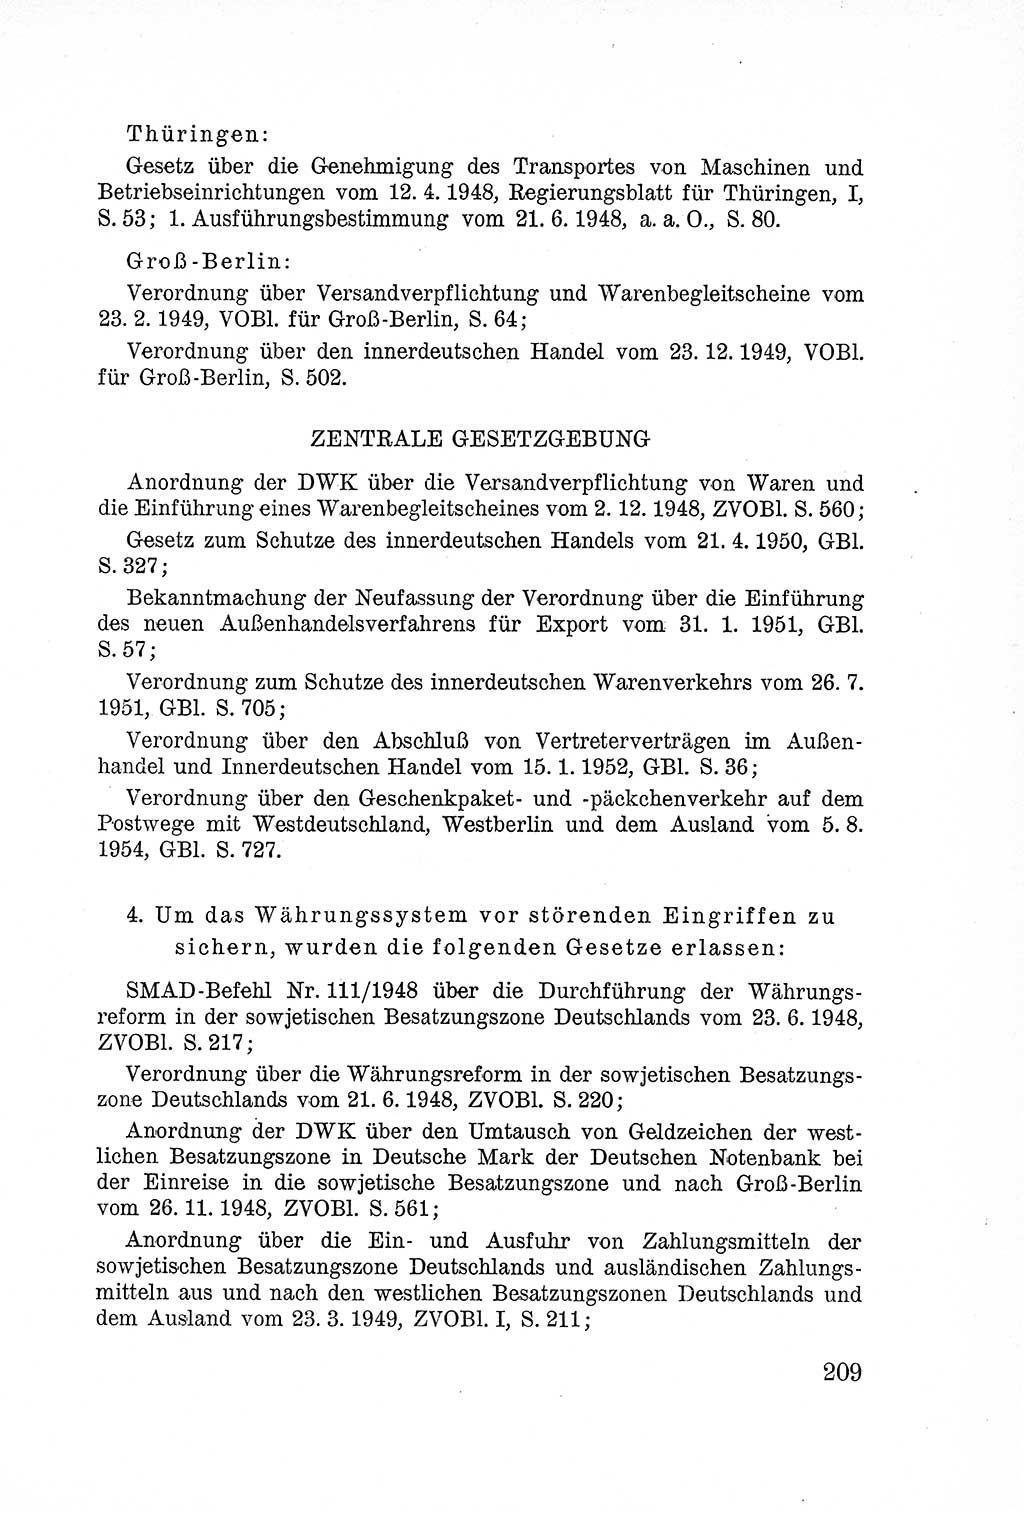 Lehrbuch des Strafrechts der Deutschen Demokratischen Republik (DDR), Allgemeiner Teil 1957, Seite 209 (Lb. Strafr. DDR AT 1957, S. 209)